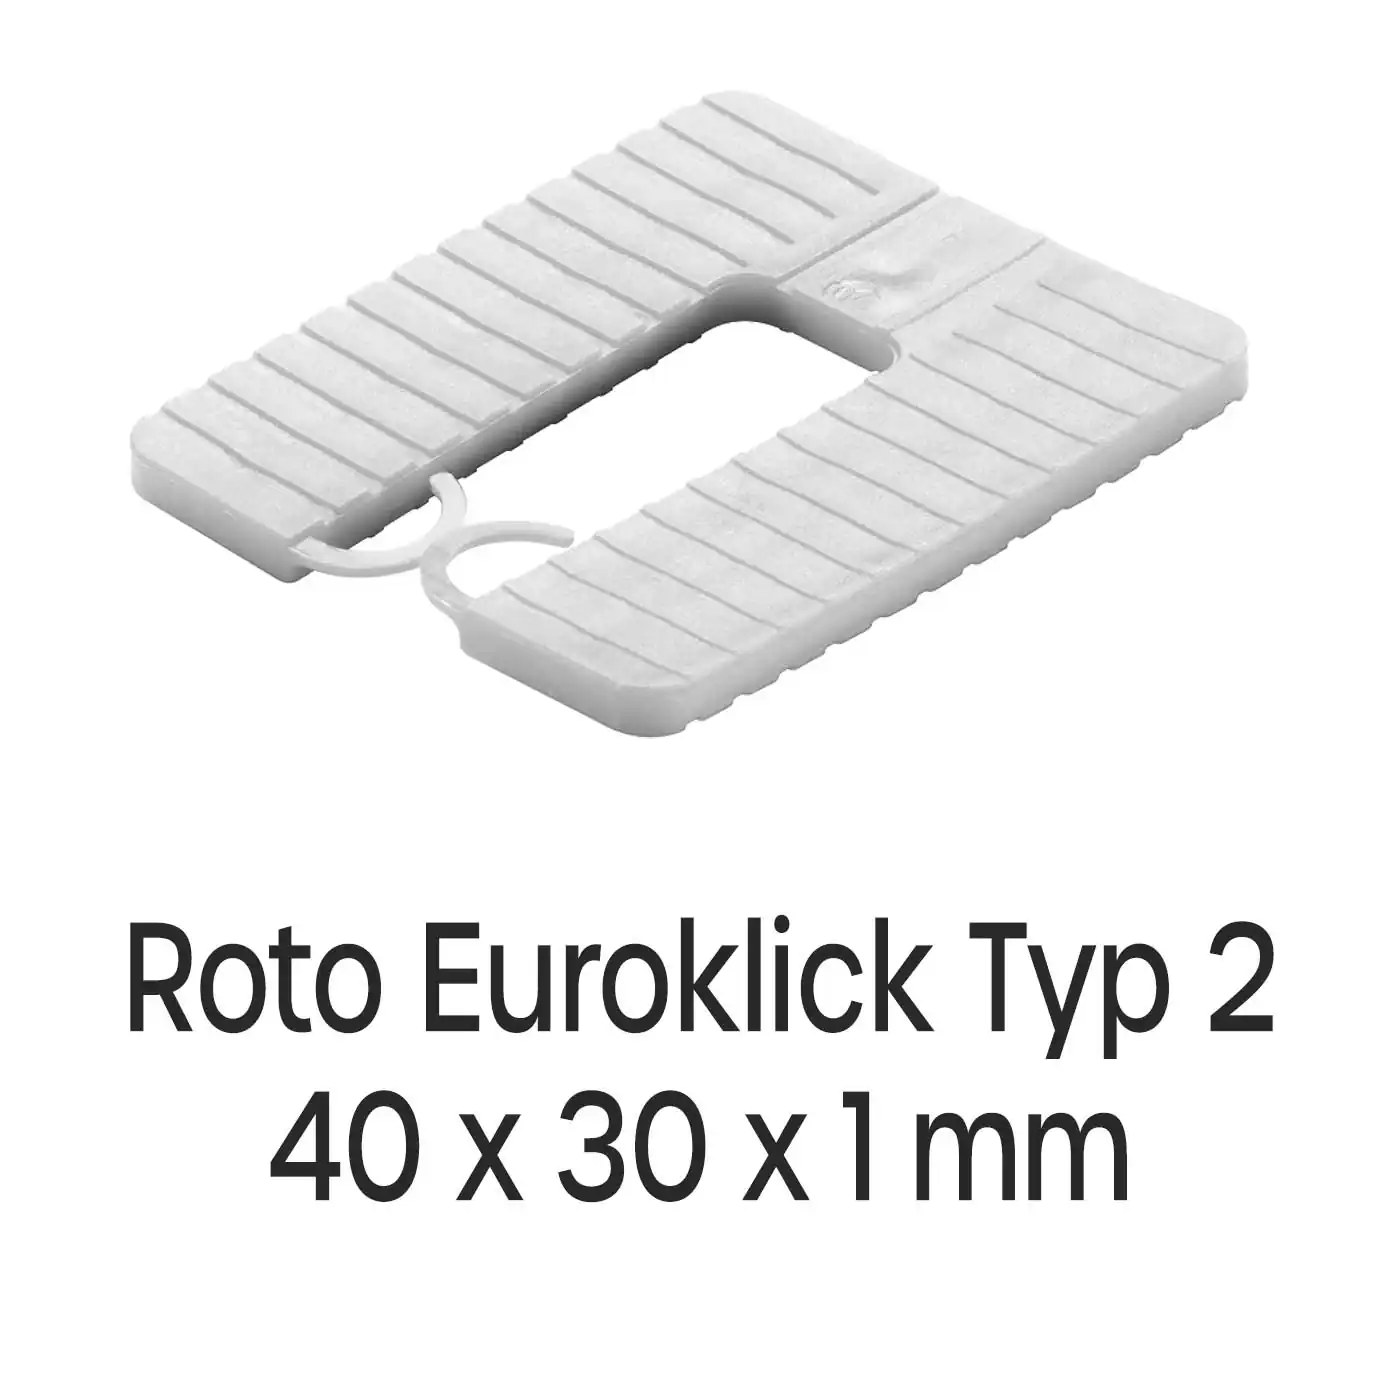 Distanzplatten Roto Euroklick Typ 2 40 x 30 x 1 mm 1000 Stück